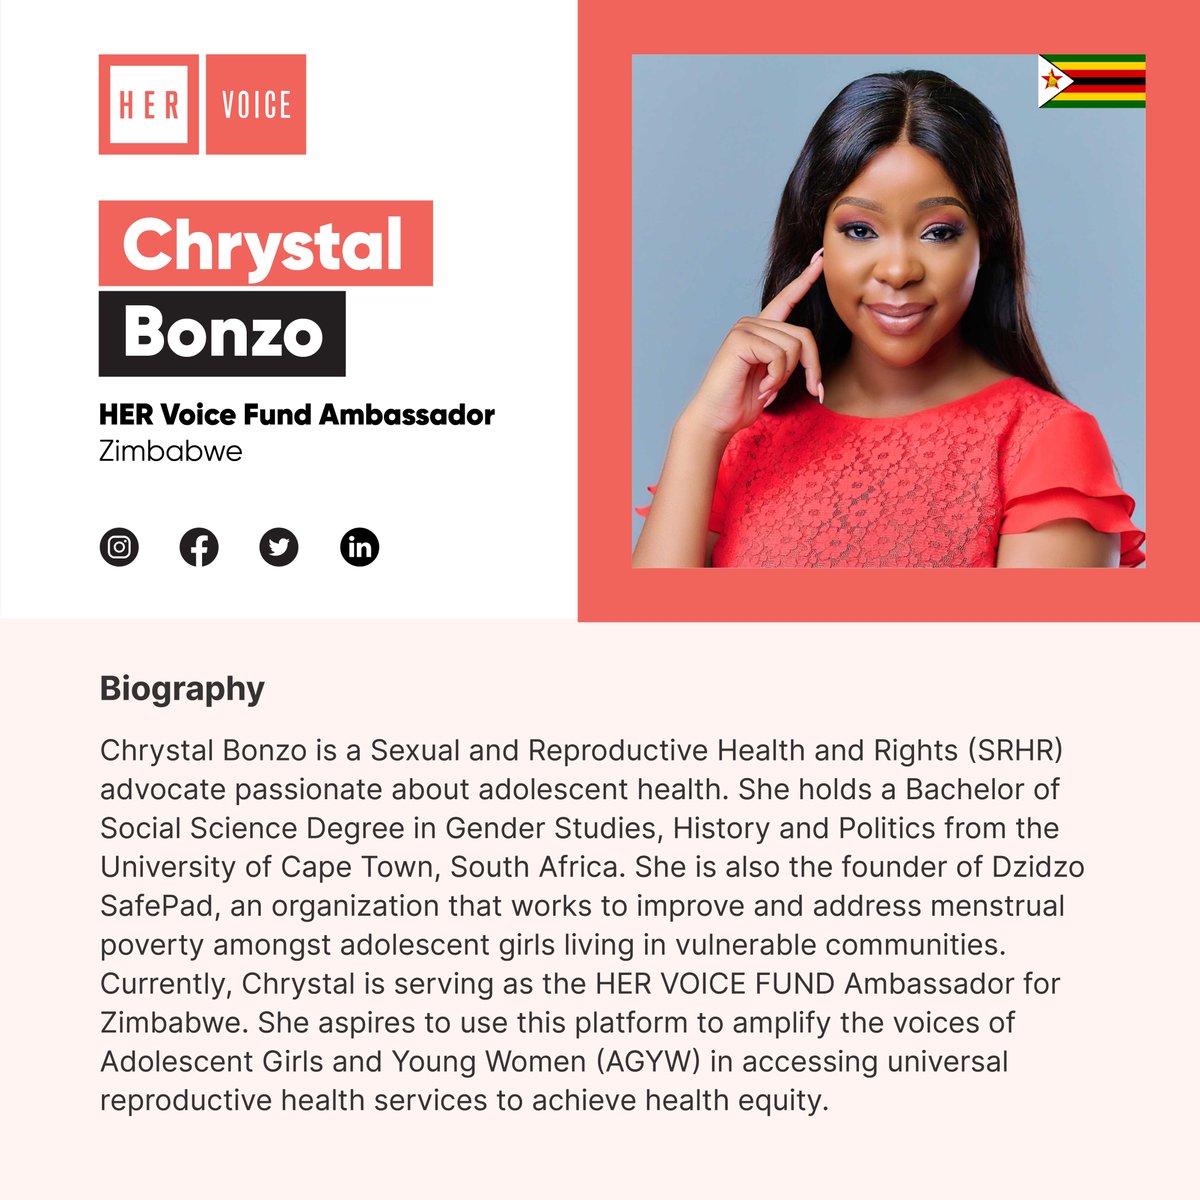 Meet our HER Voice Fund Ambassador to Zimbabwe @chrystalbonxo.

#HERVoiceFund